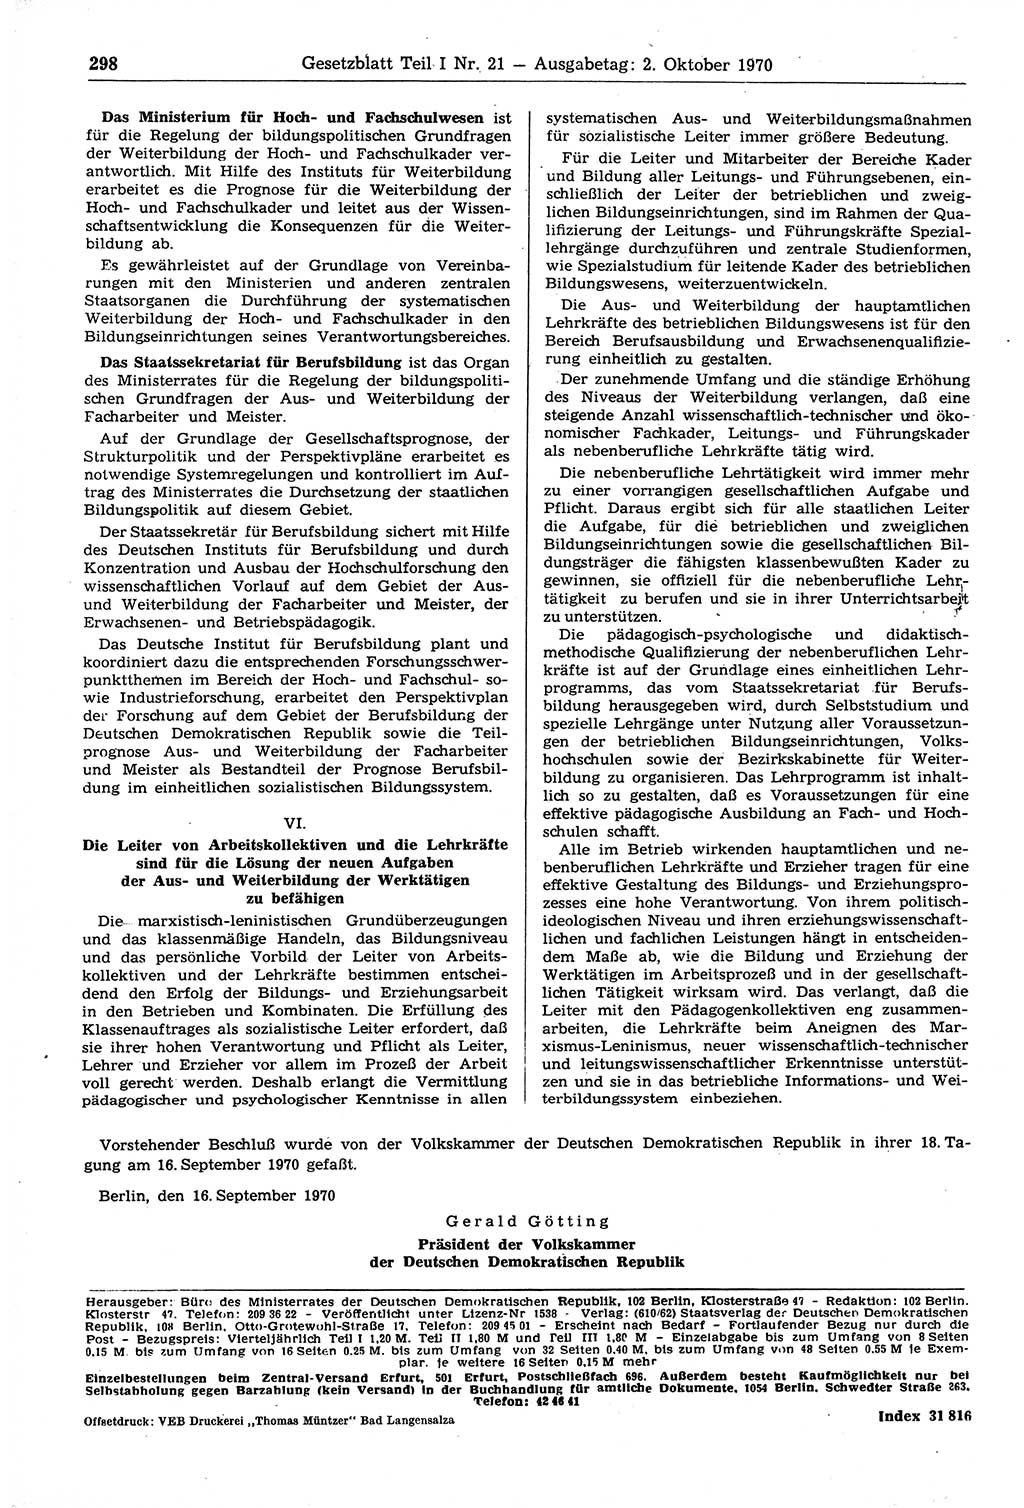 Gesetzblatt (GBl.) der Deutschen Demokratischen Republik (DDR) Teil Ⅰ 1970, Seite 298 (GBl. DDR Ⅰ 1970, S. 298)